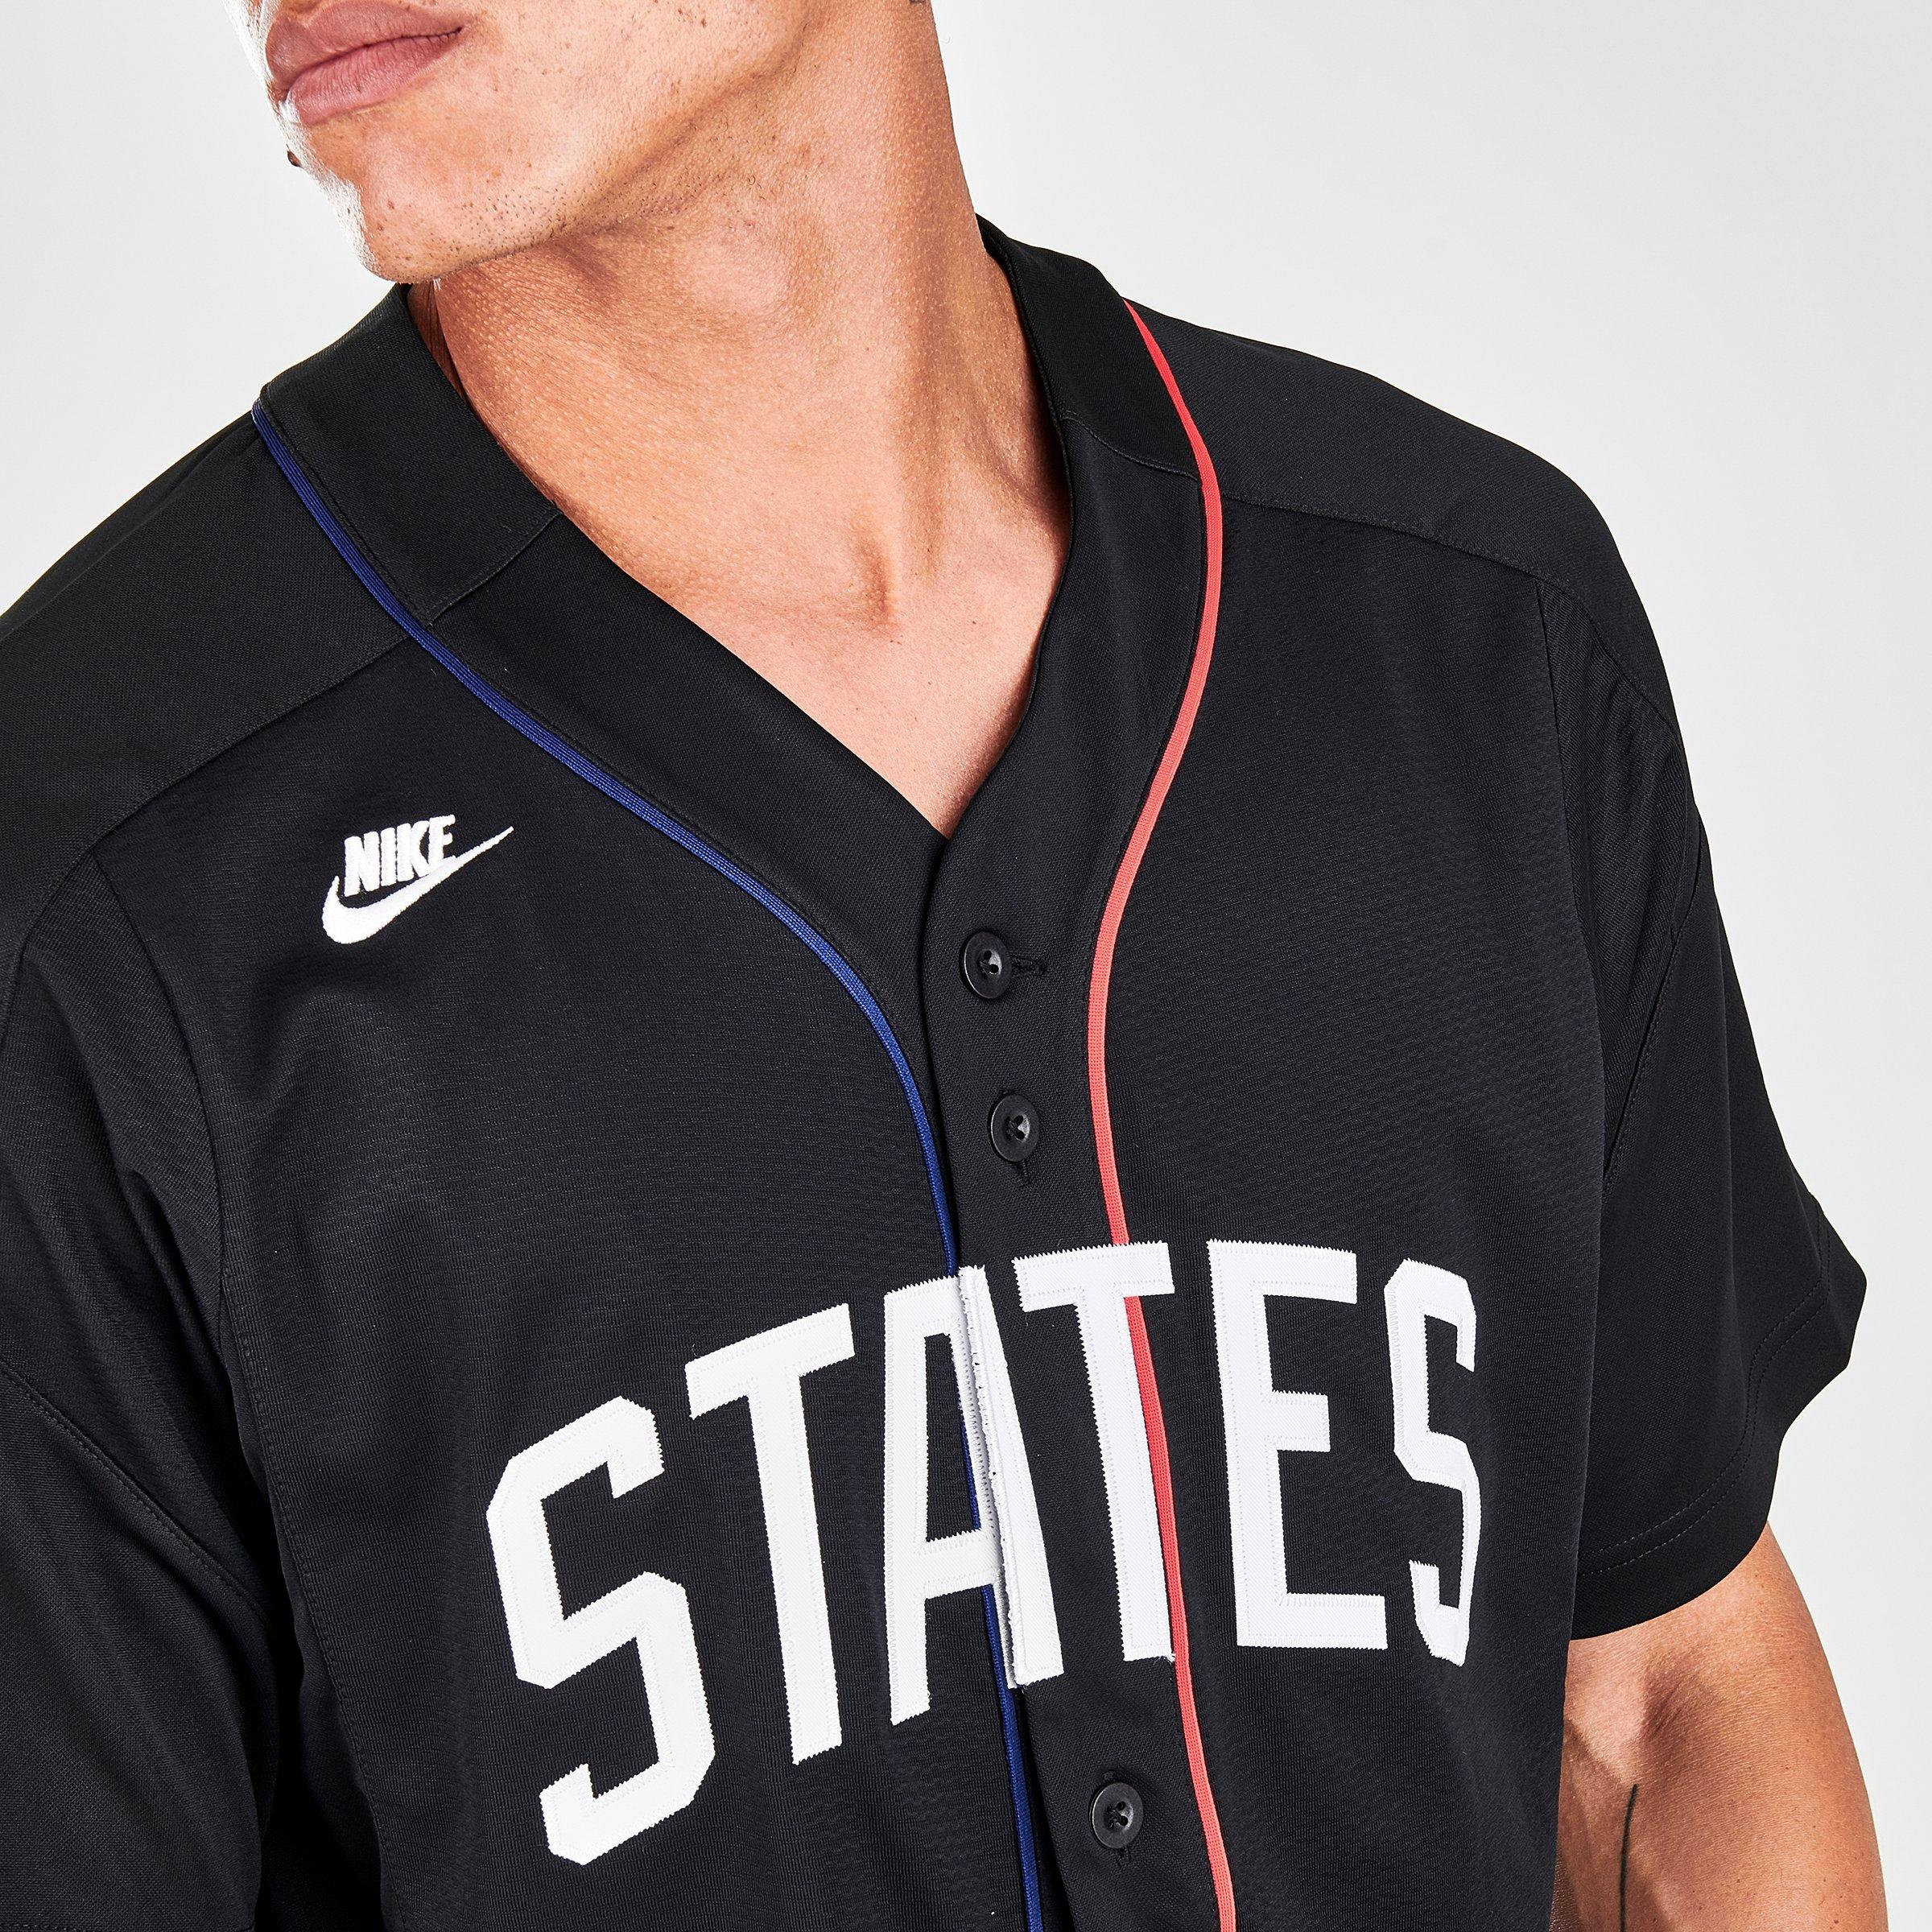 states baseball jersey